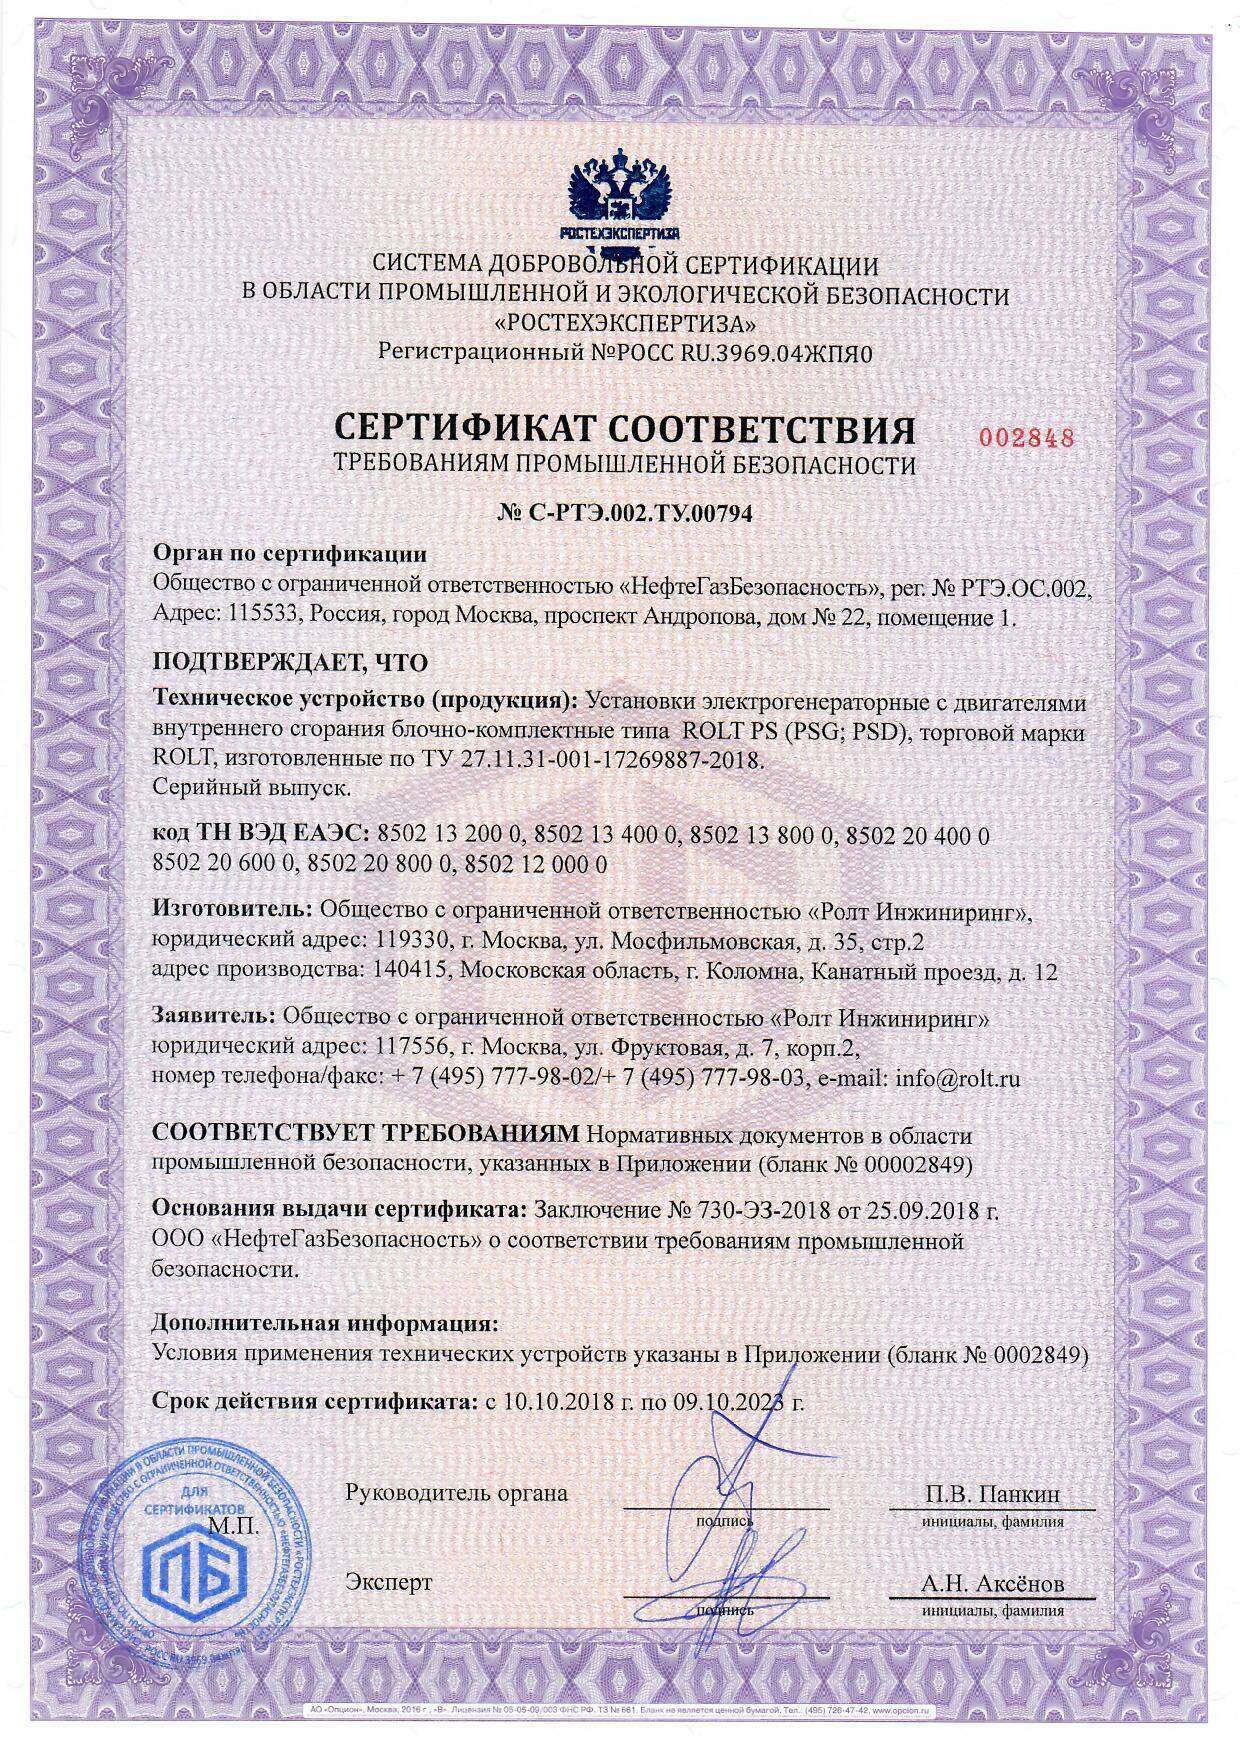 Сертификат соответствия ROLT PS